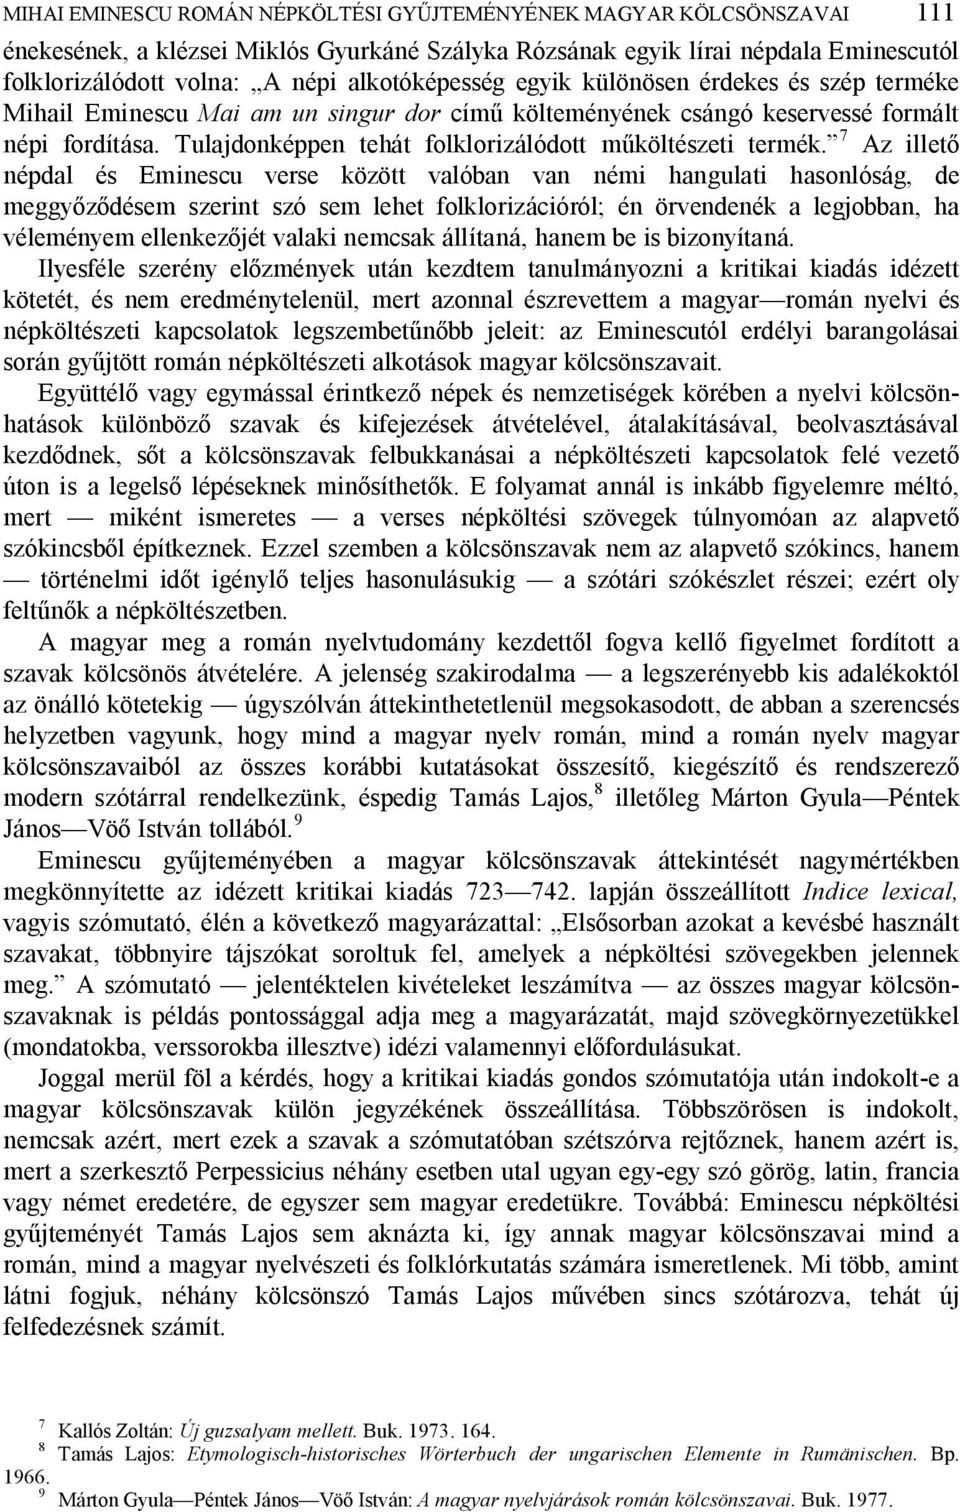 Mihai Eminescu román népköltési gy jteményének magyar kölcsönszavai 1 - PDF  Free Download